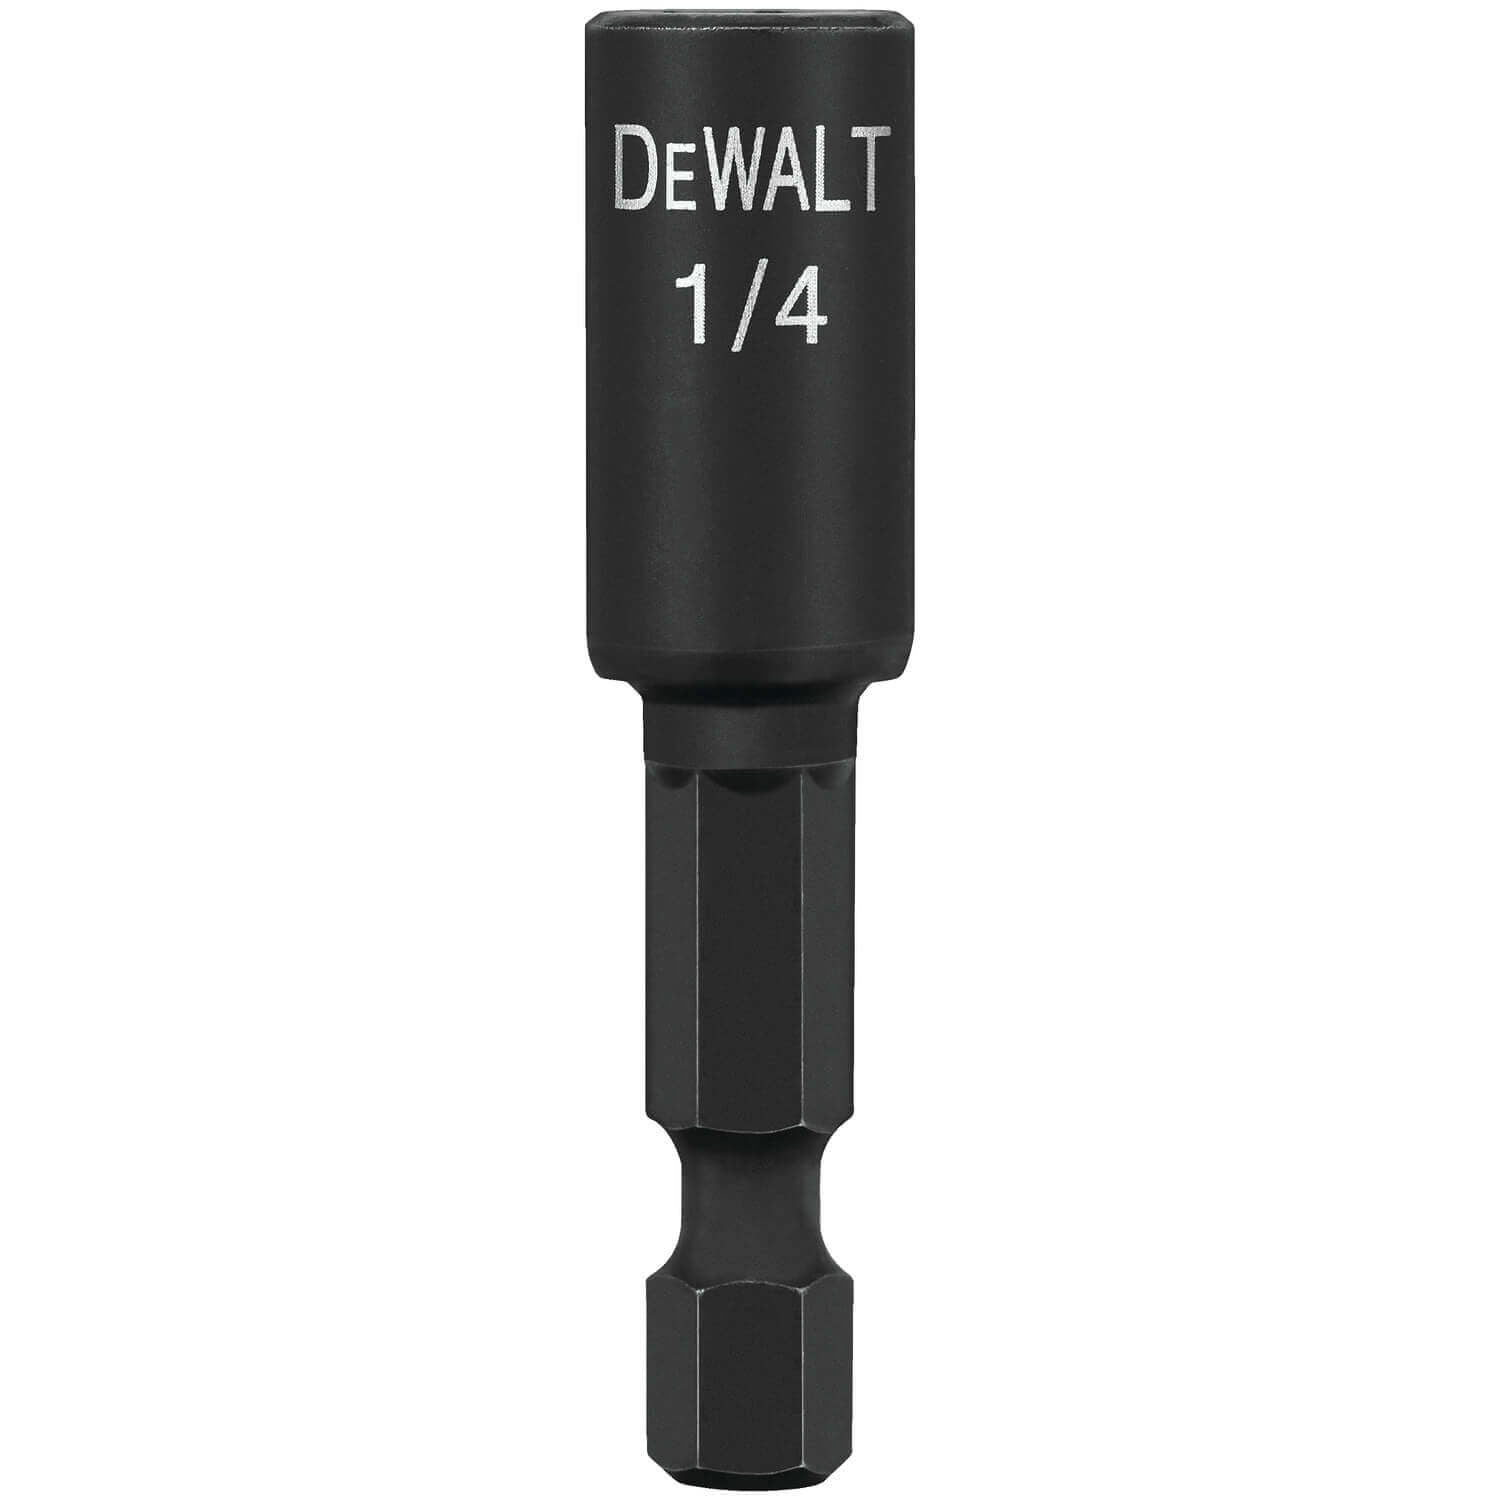 DEWALT DW2218IR - 1/4 Inch x 1 7/8 inch IMPACT READY MAGNETIC NUT DRIVER